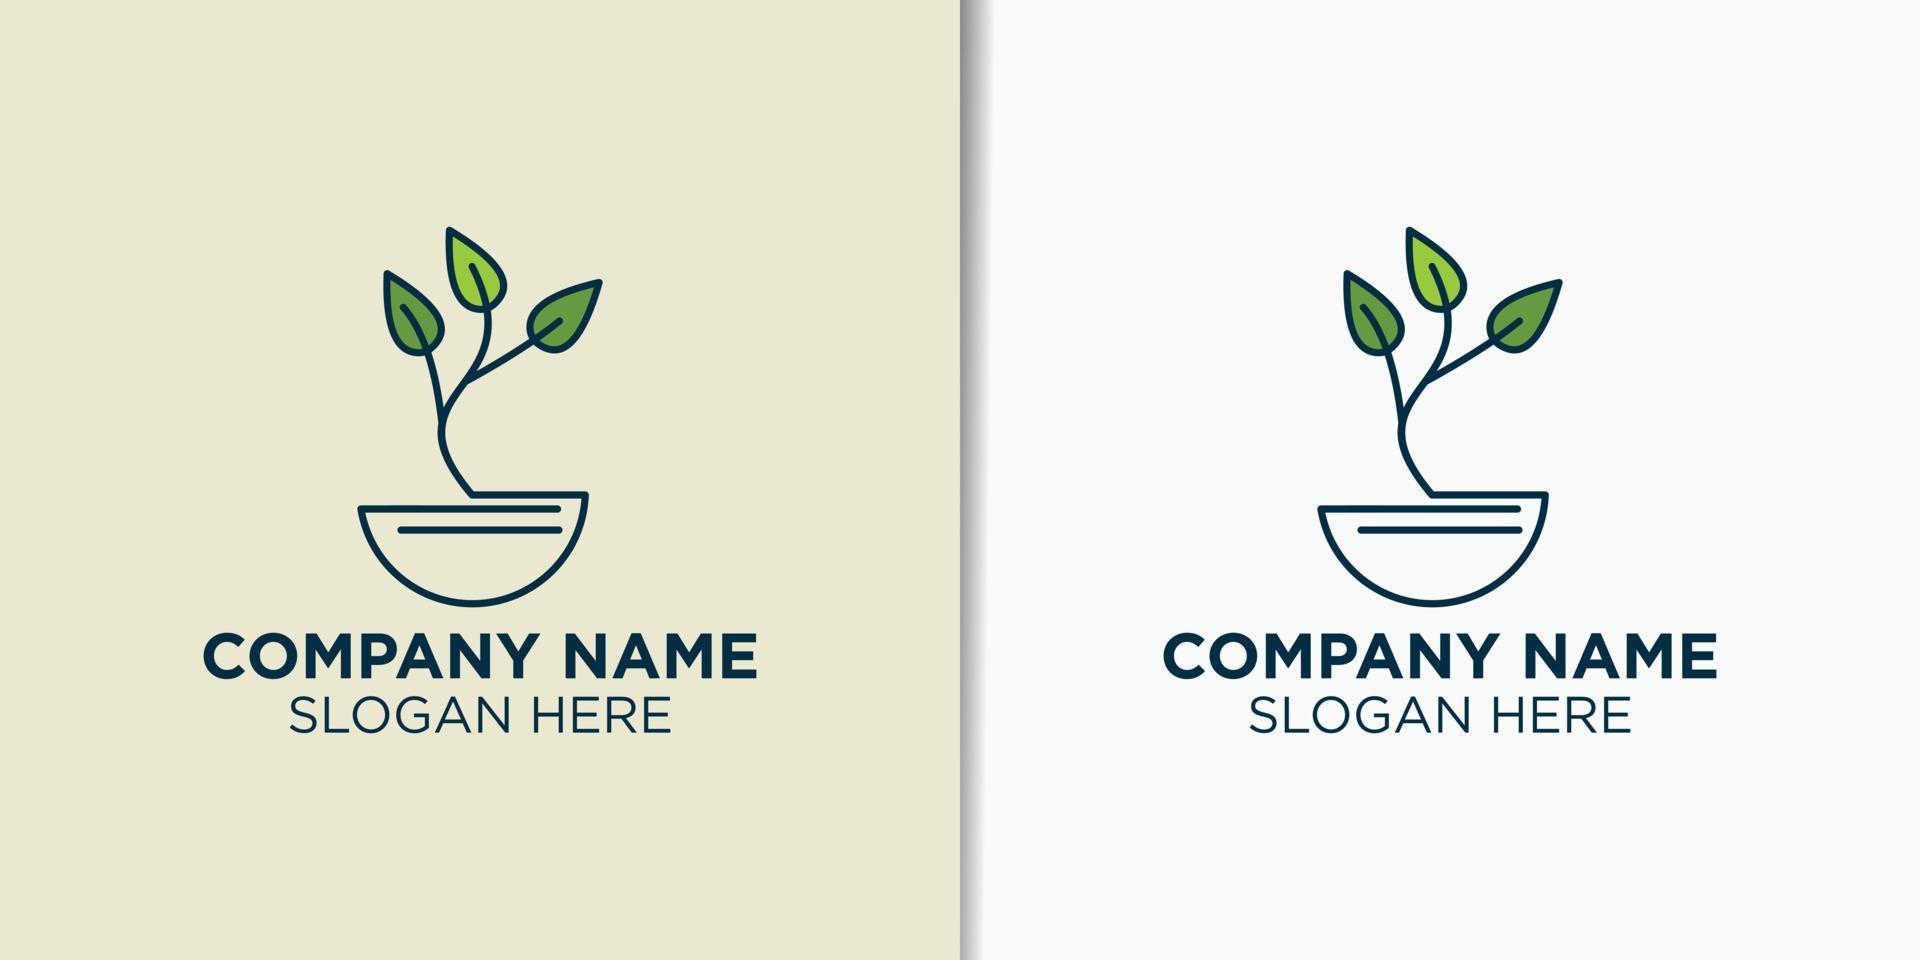 landscape vintage logo design vector, agriculture logo template vector